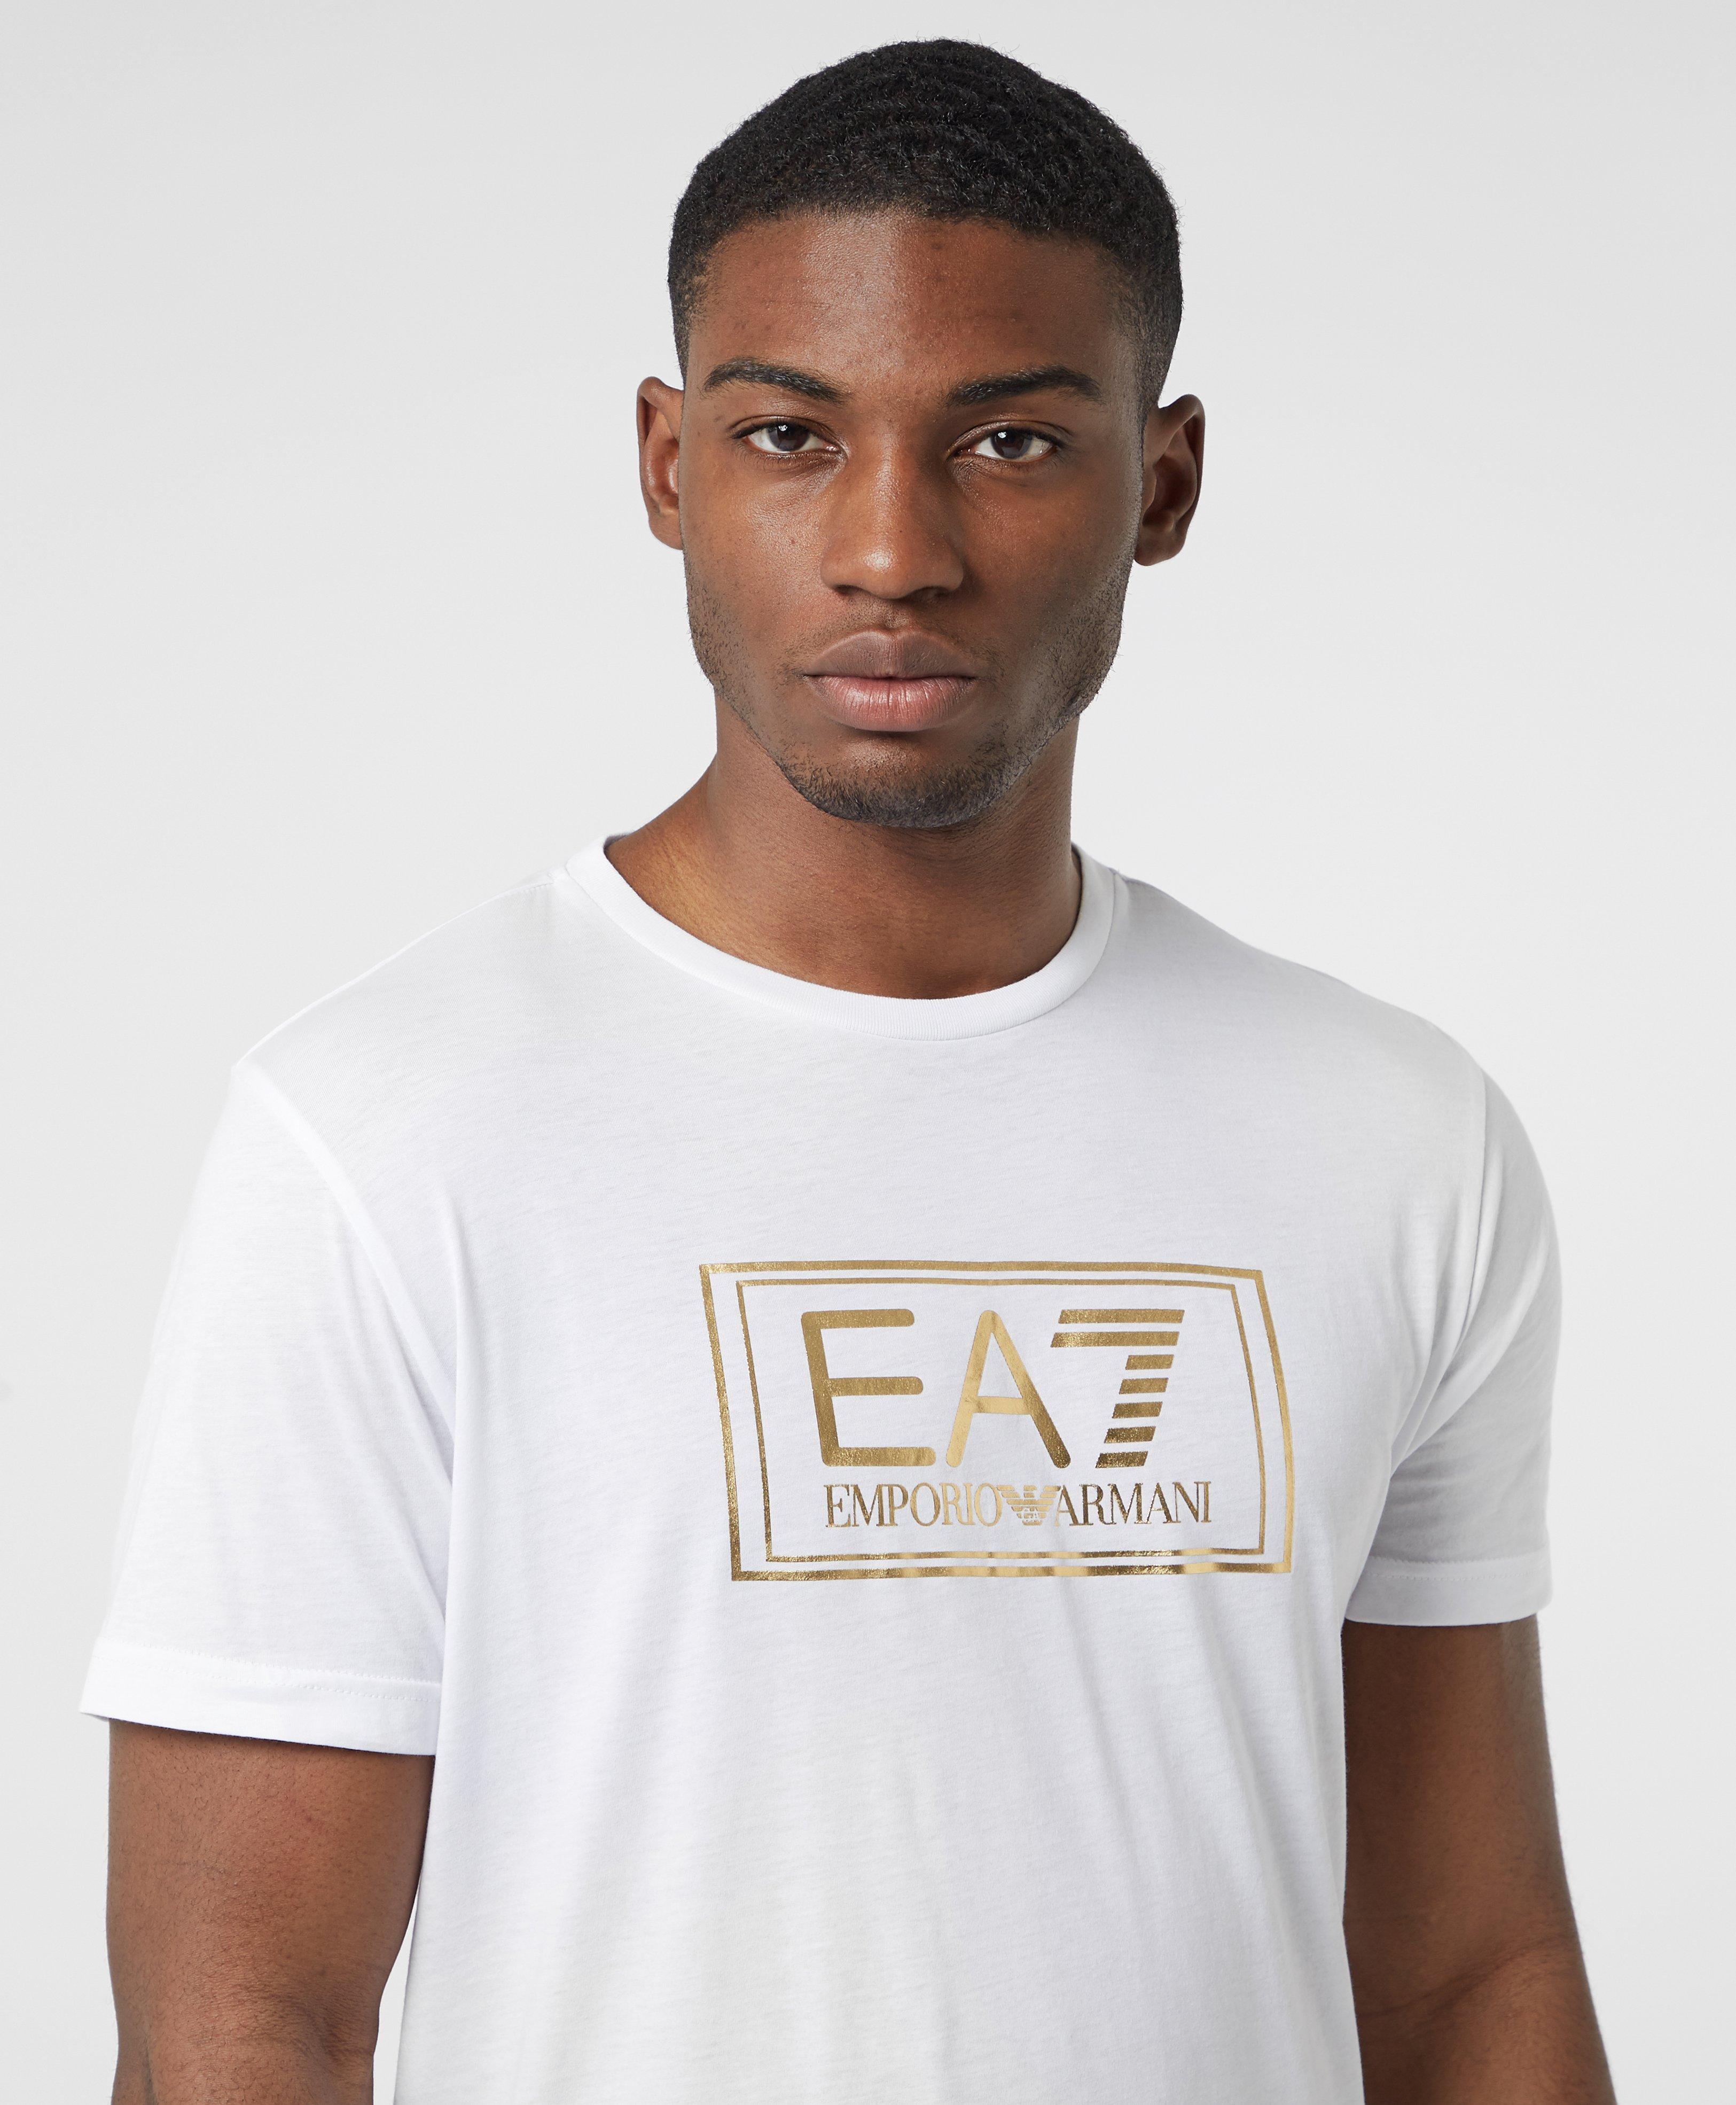 ea7 gold t shirt